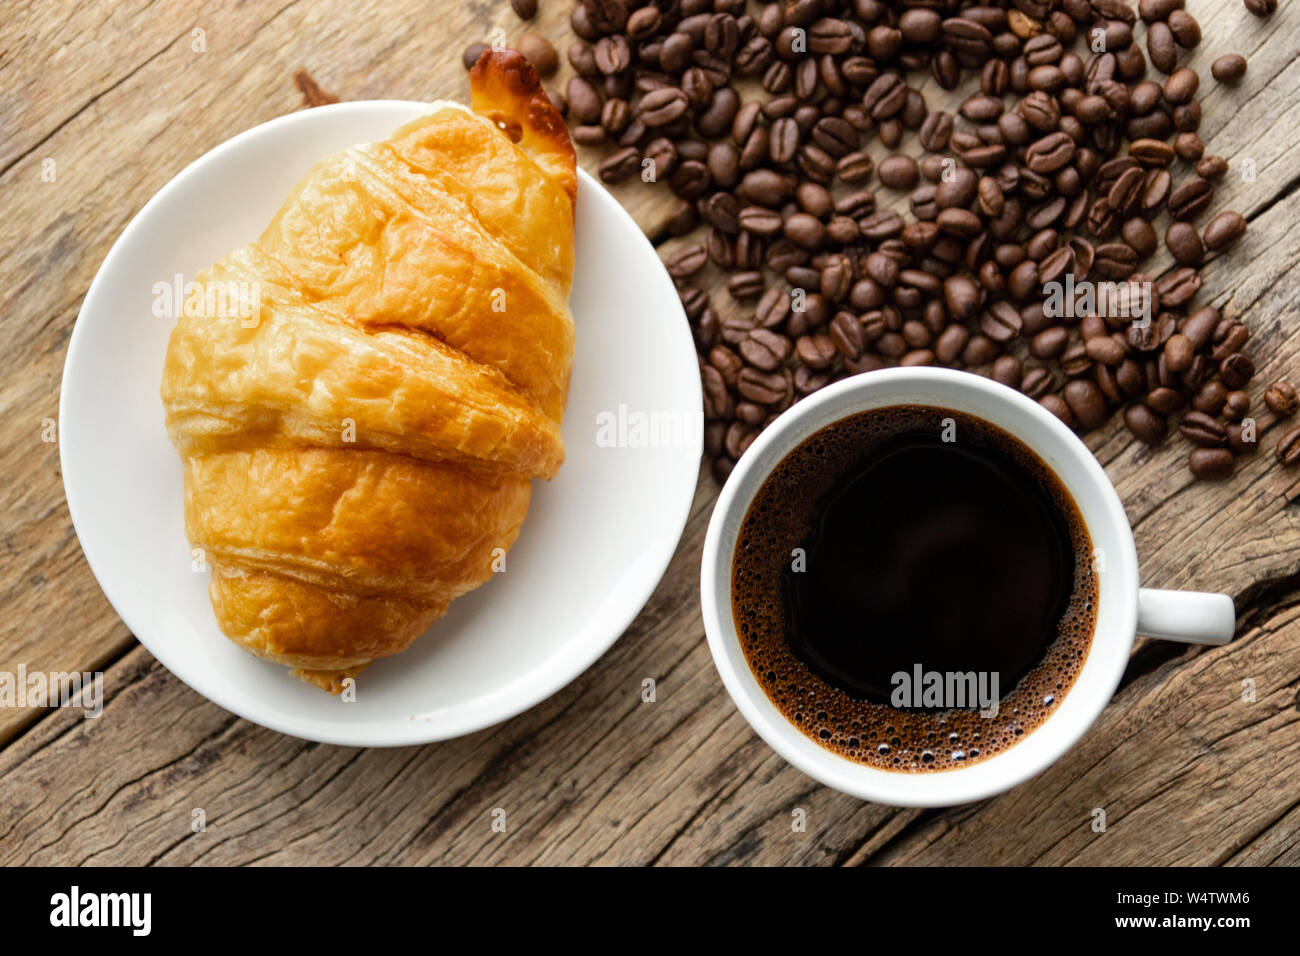 Kontinentales Frühstück mit frischen Croissants und heißen Kaffee auf hölzernen Hintergrund, Deko mit Kaffeebohnen Stockfoto